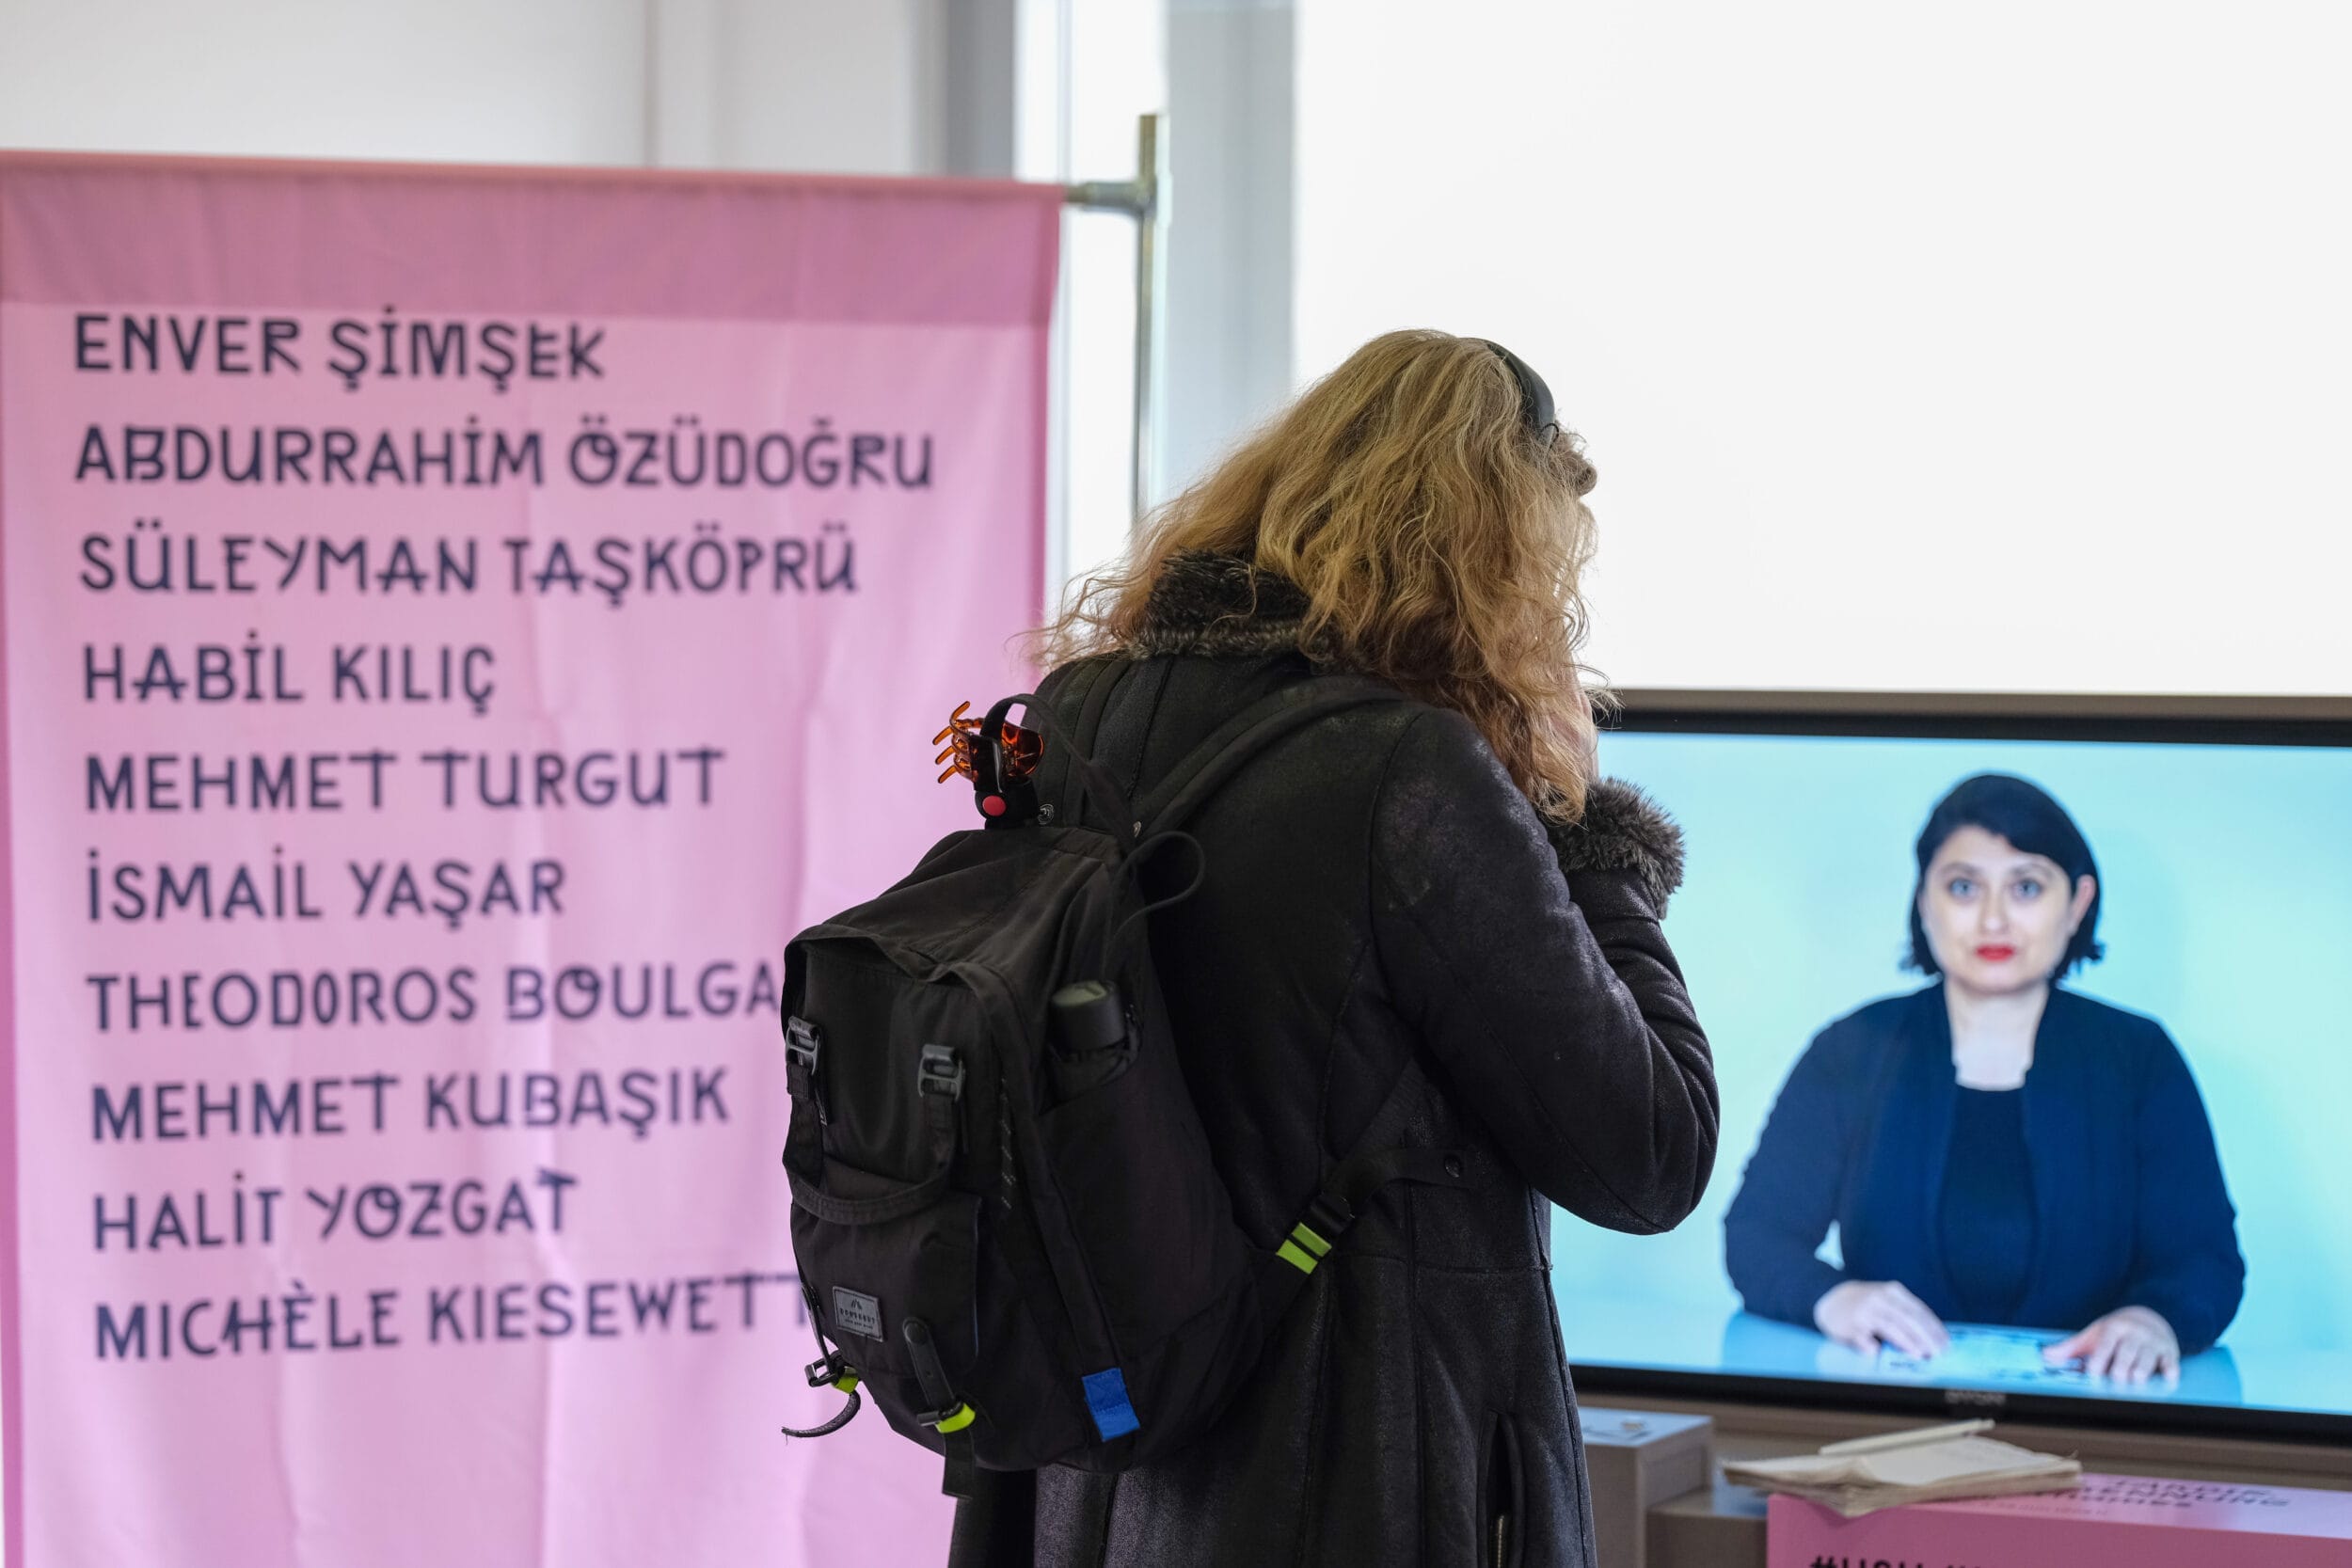 Eine Frau mit einem Rucksack betrachtet eine auf einem Bildschirm angezeigte Gedenkausstellung mit den Namen einzelner Personen. Auf dem Bildschirm ist eine weitere Frau zu sehen.